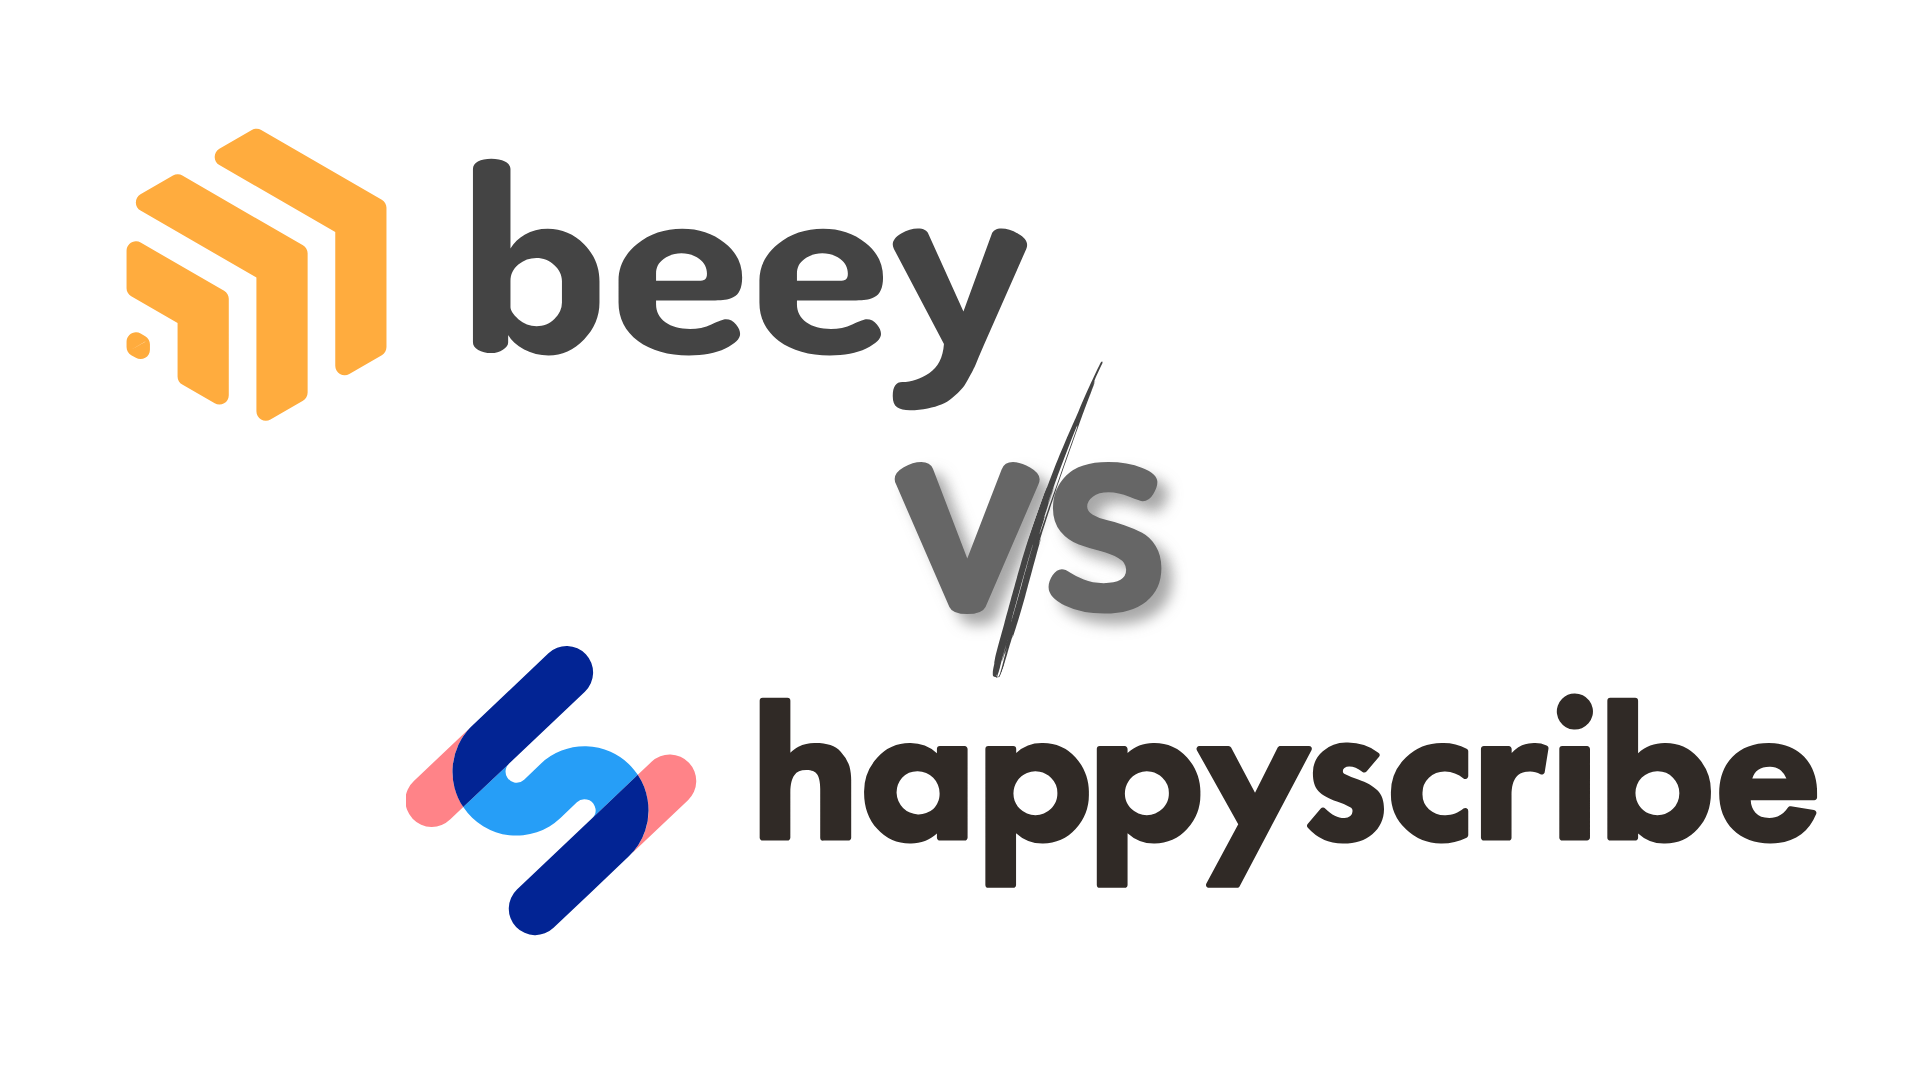 Beey versus HappyScribe